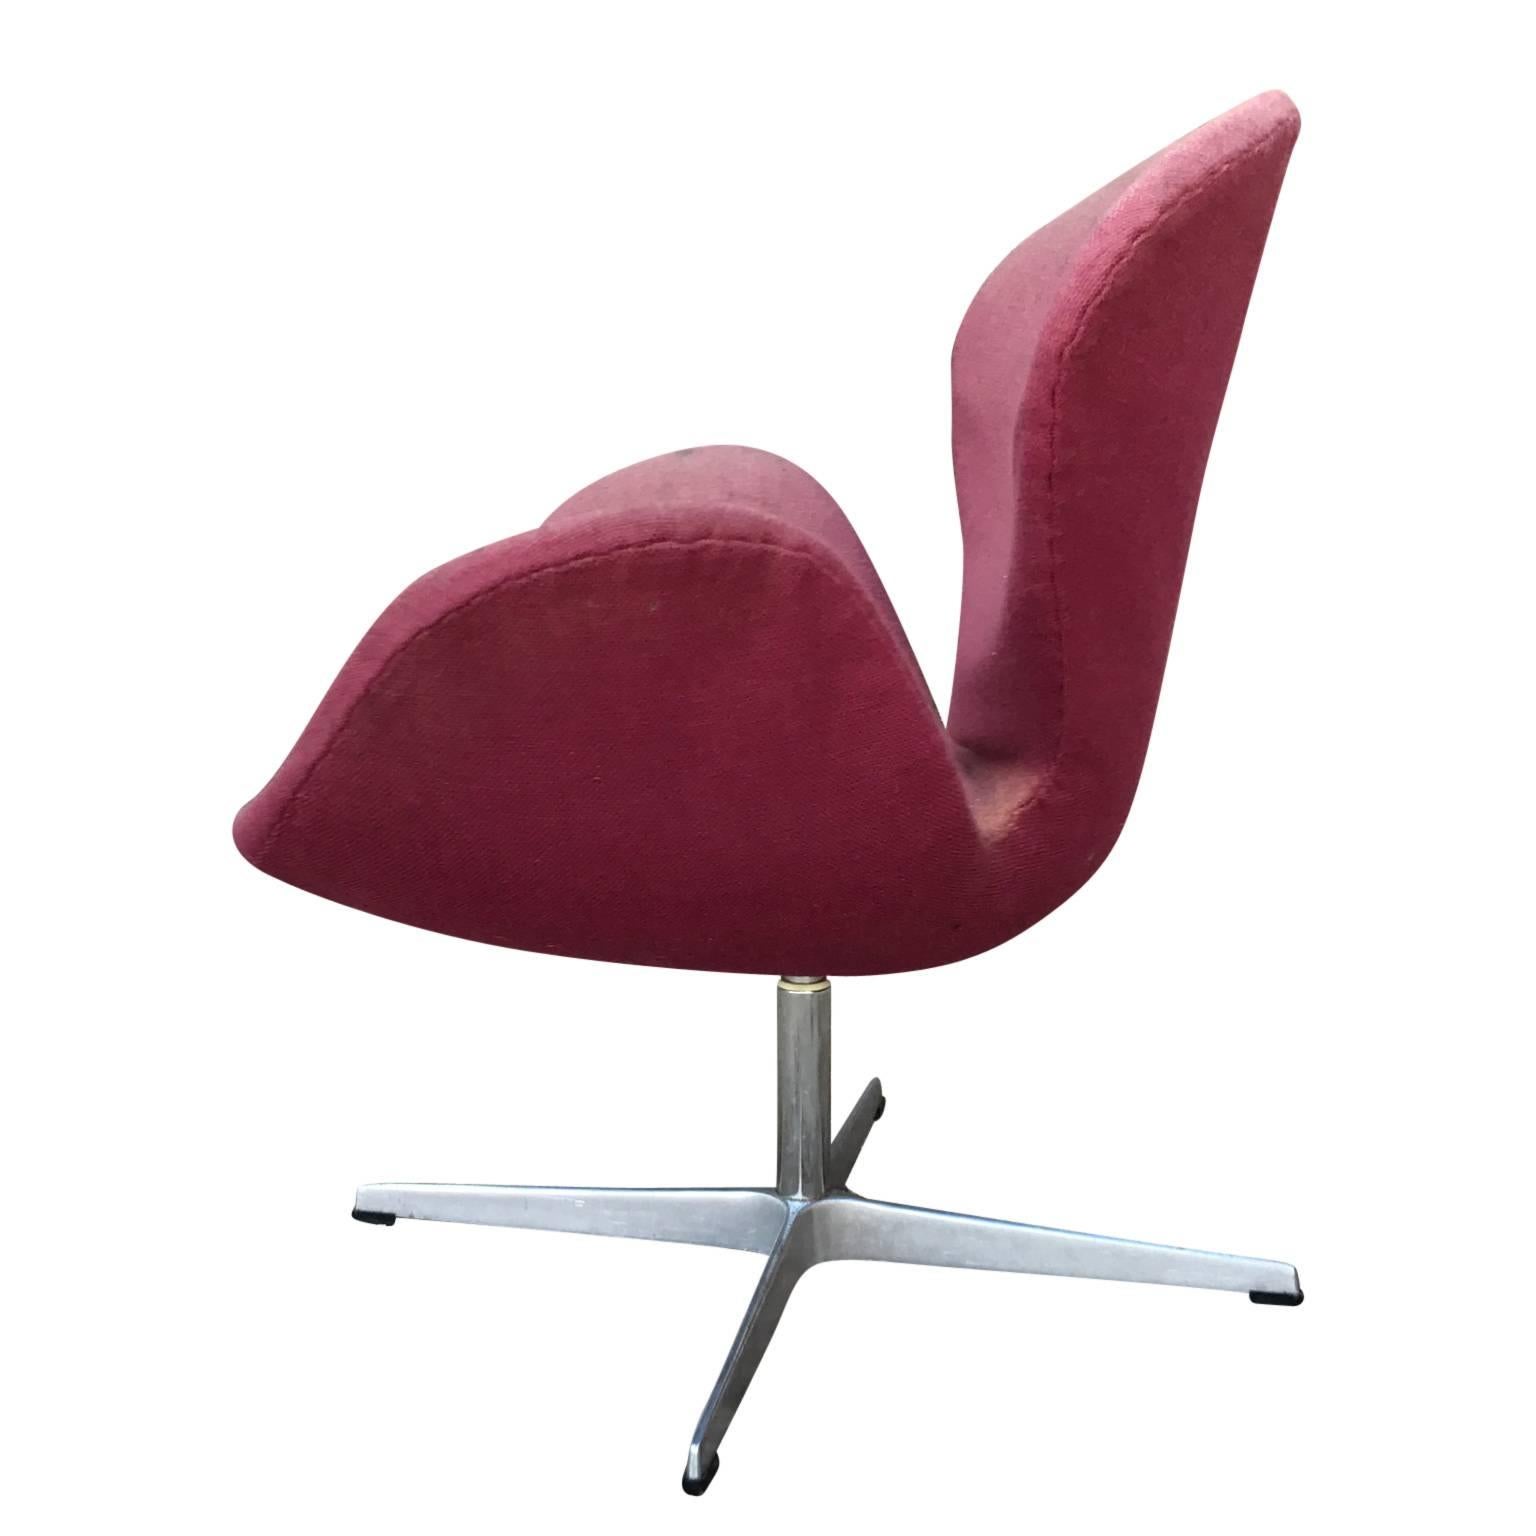 Danish Arne Jacobsen Fritz Hansen swan chair in need of restoration. It retains the original label.